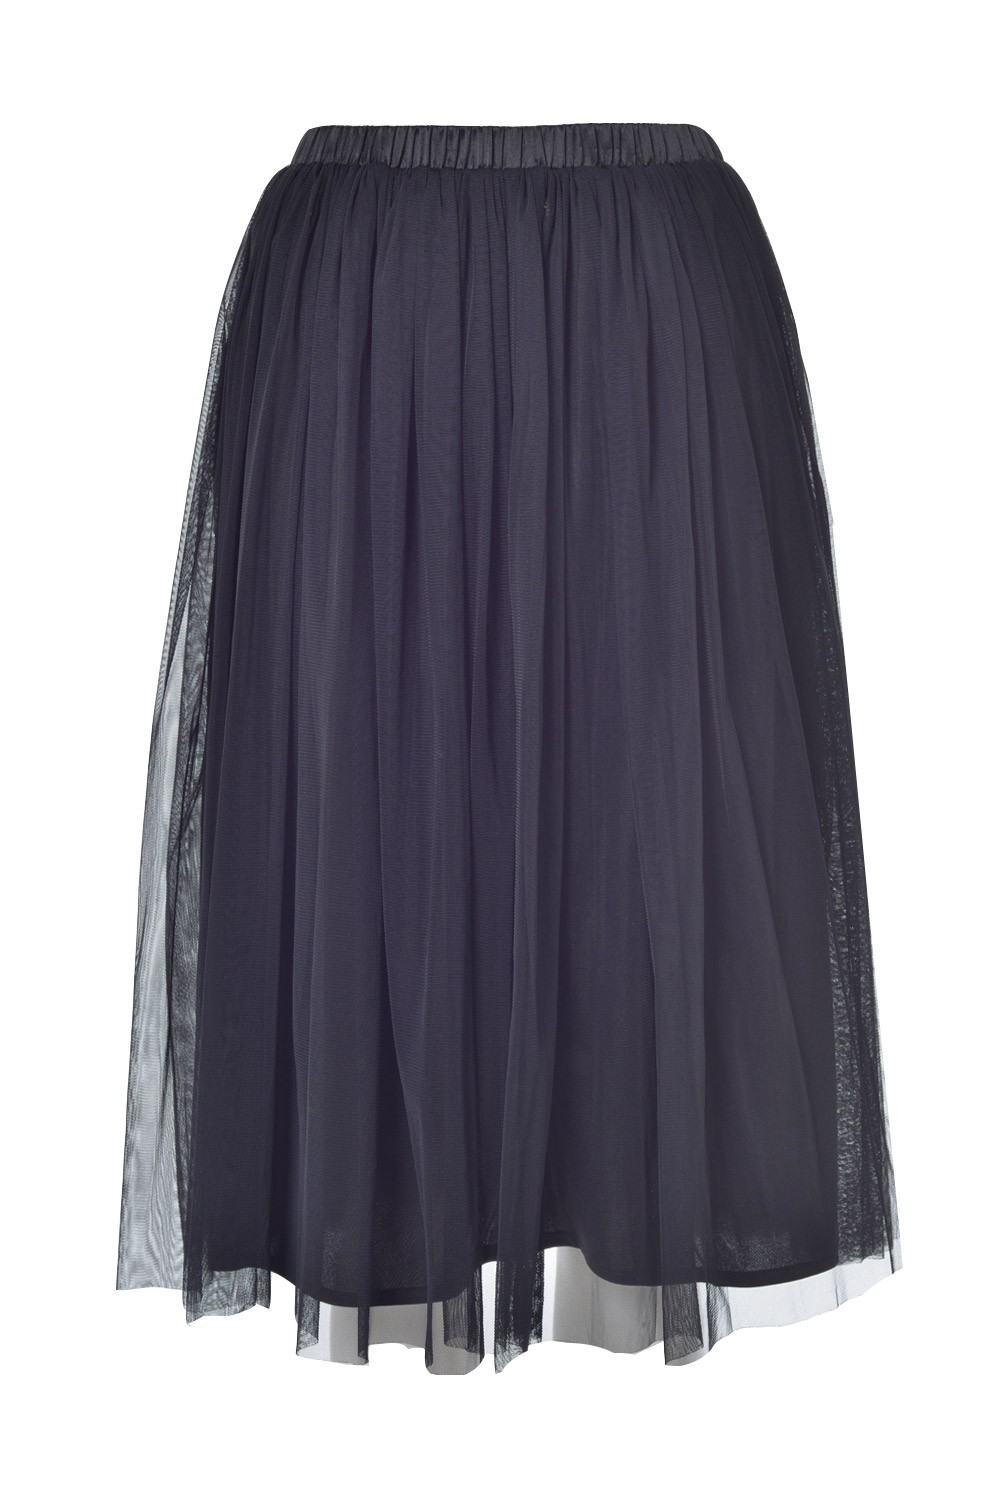 Soho Market Val Tulle Skirt in Black | iCLOTHING